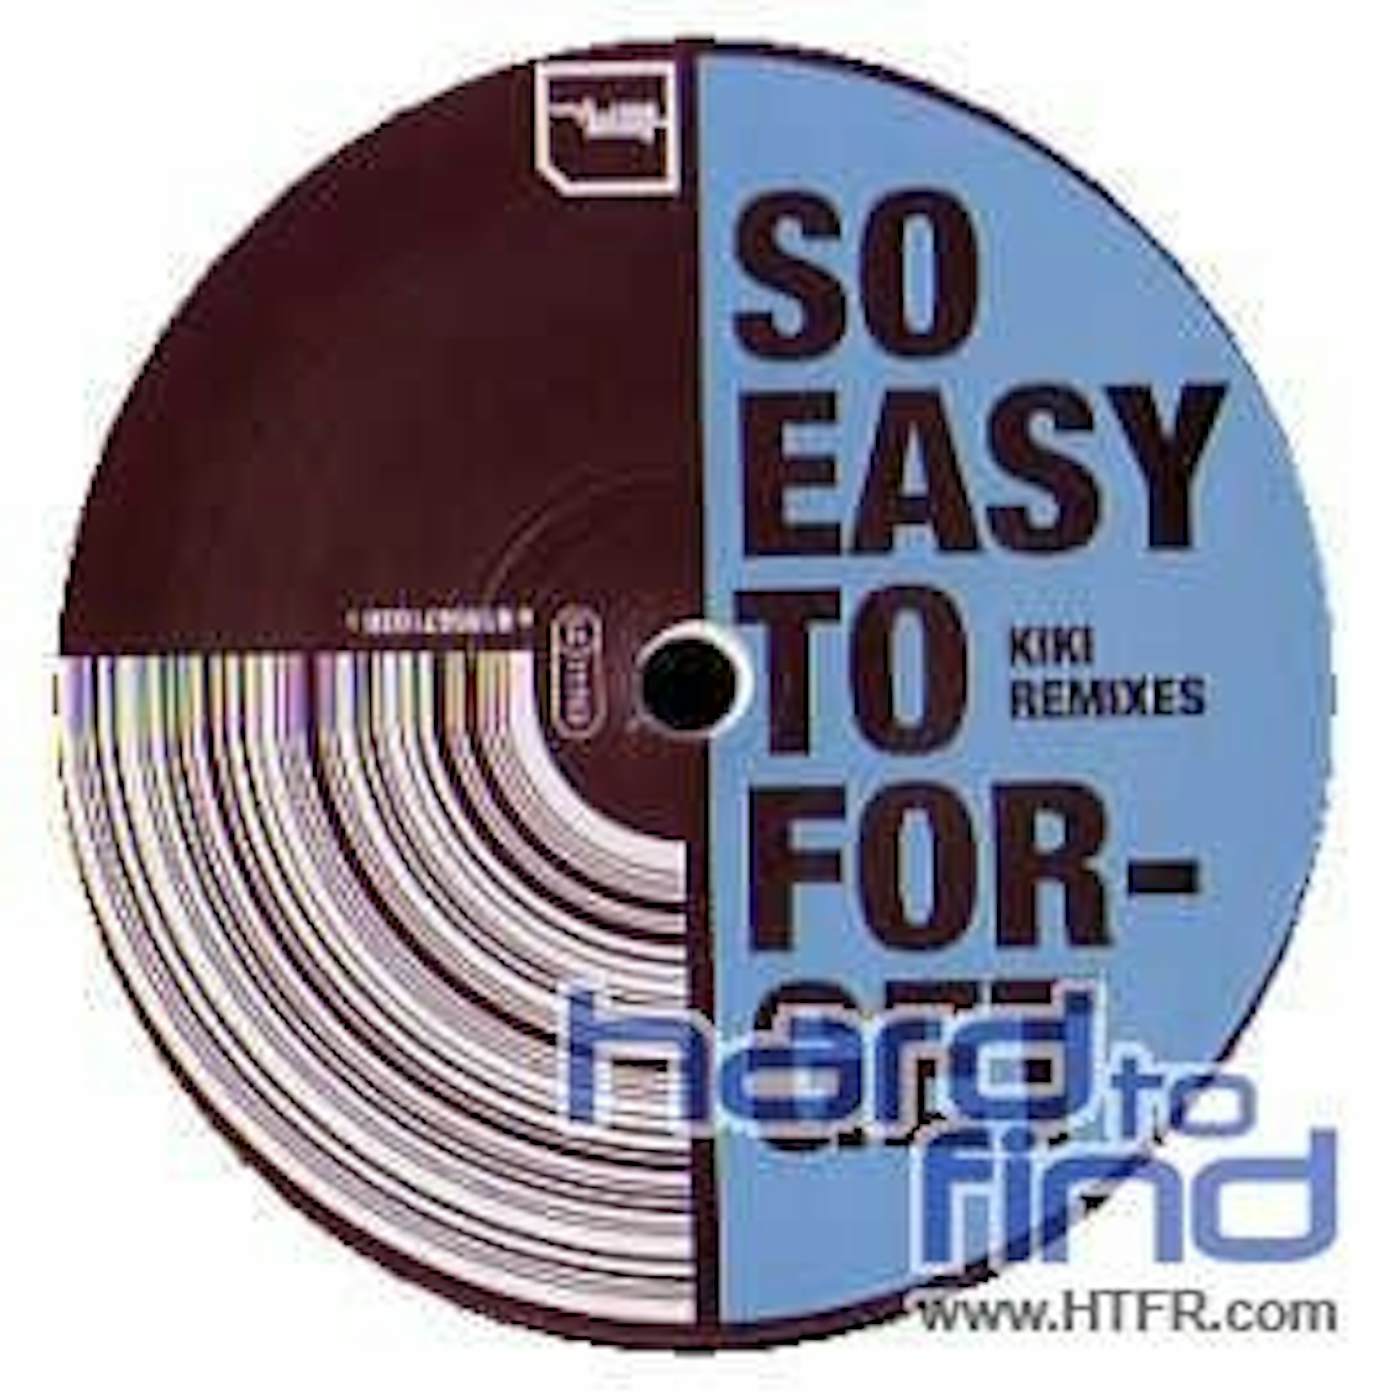 KIKI EASY TO FORGET REMIXES Vinyl Record